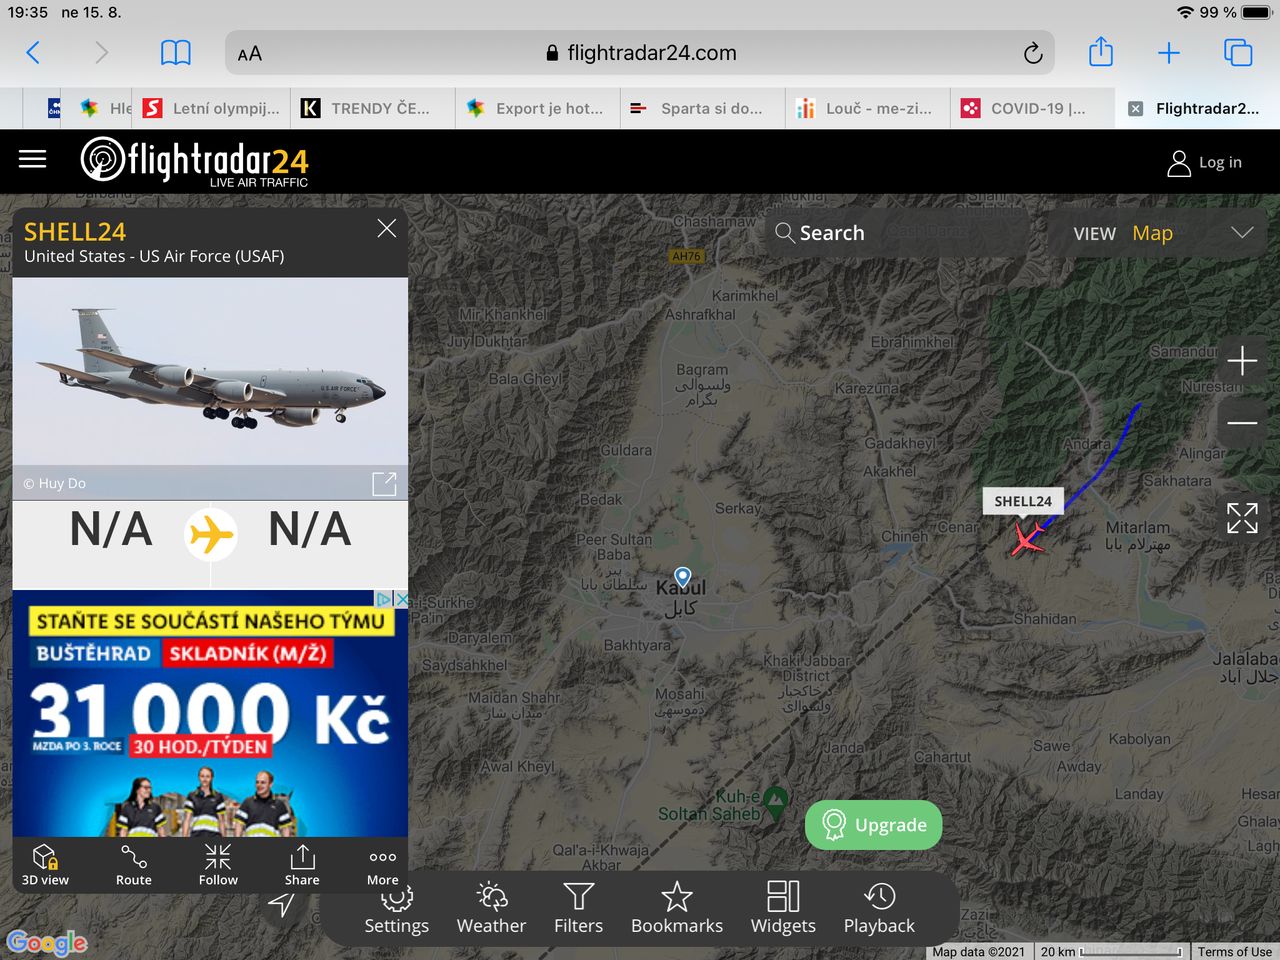 Flightradar24 Kábul 19:30